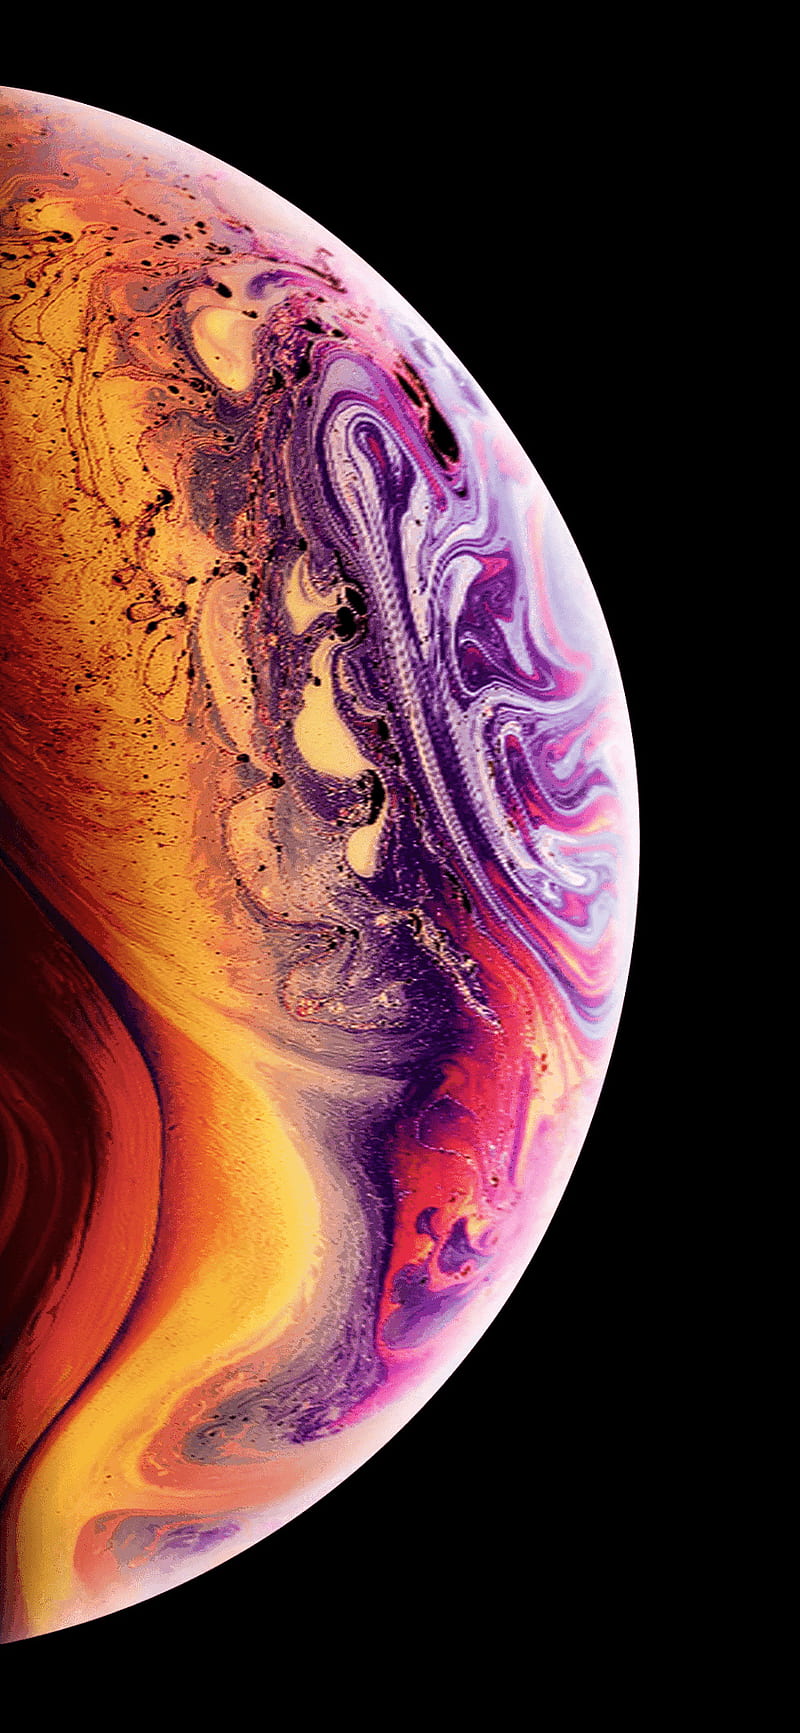 Hình nền đất trái tim của iPhone XS sẽ khiến bạn cảm thấy yêu chiếc điện thoại của mình hơn bao giờ hết. Đây là một bức hình nền độc đáo với sự kết hợp hoàn hảo giữa màu sắc và thiết kế.